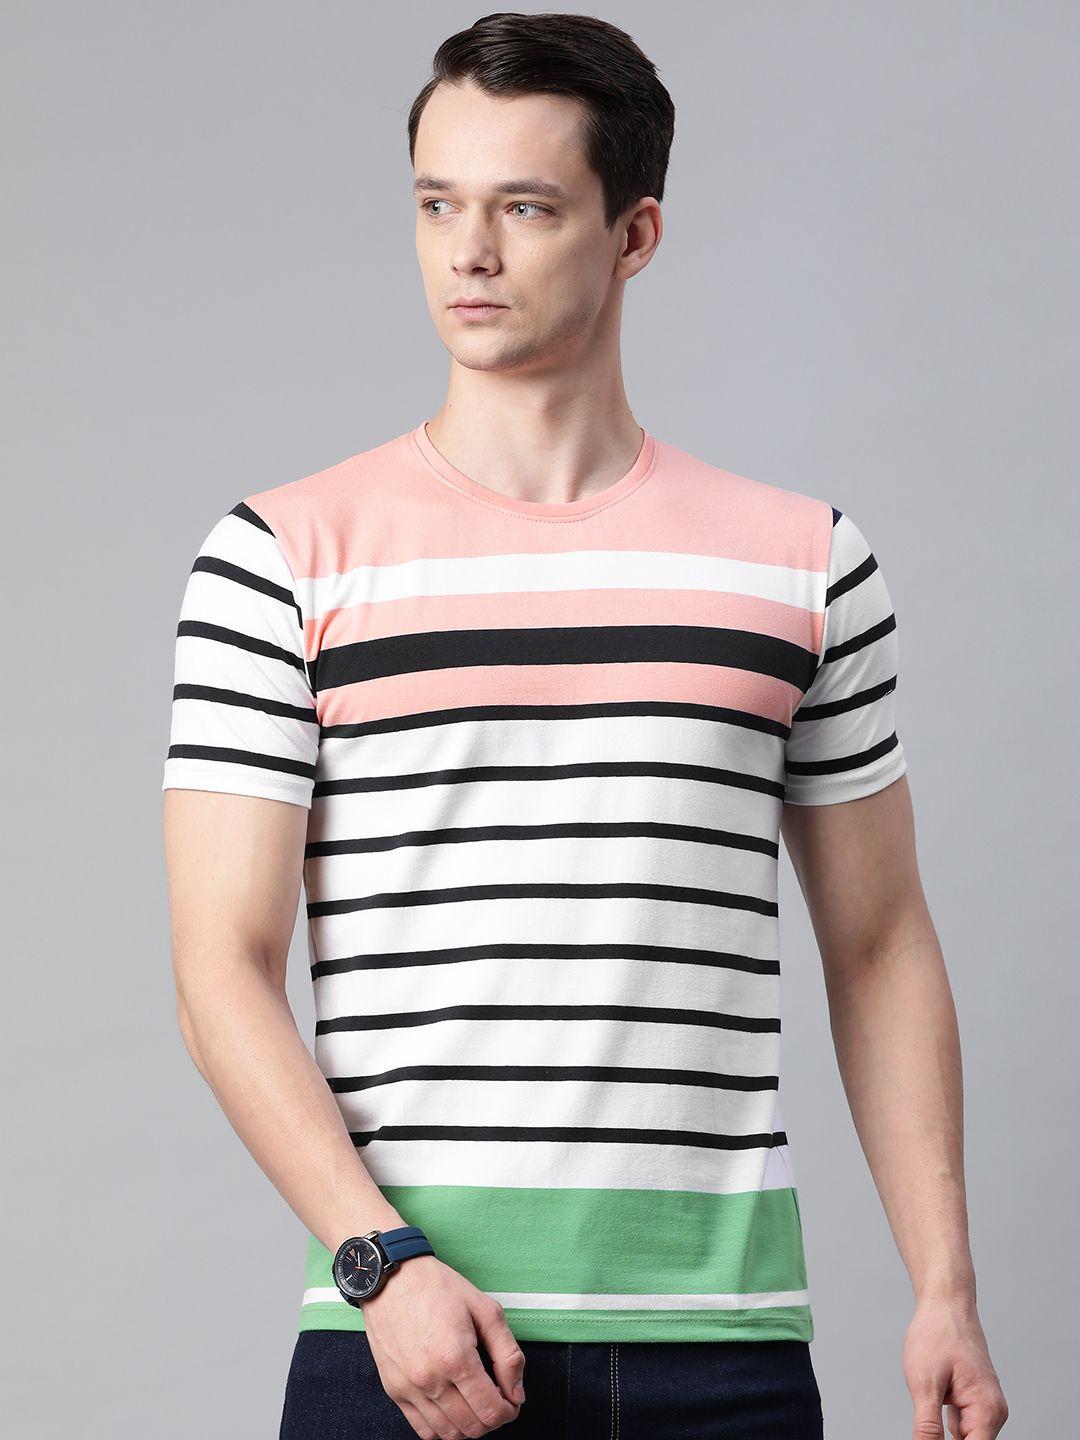 pierre carlo men white & black striped t-shirt